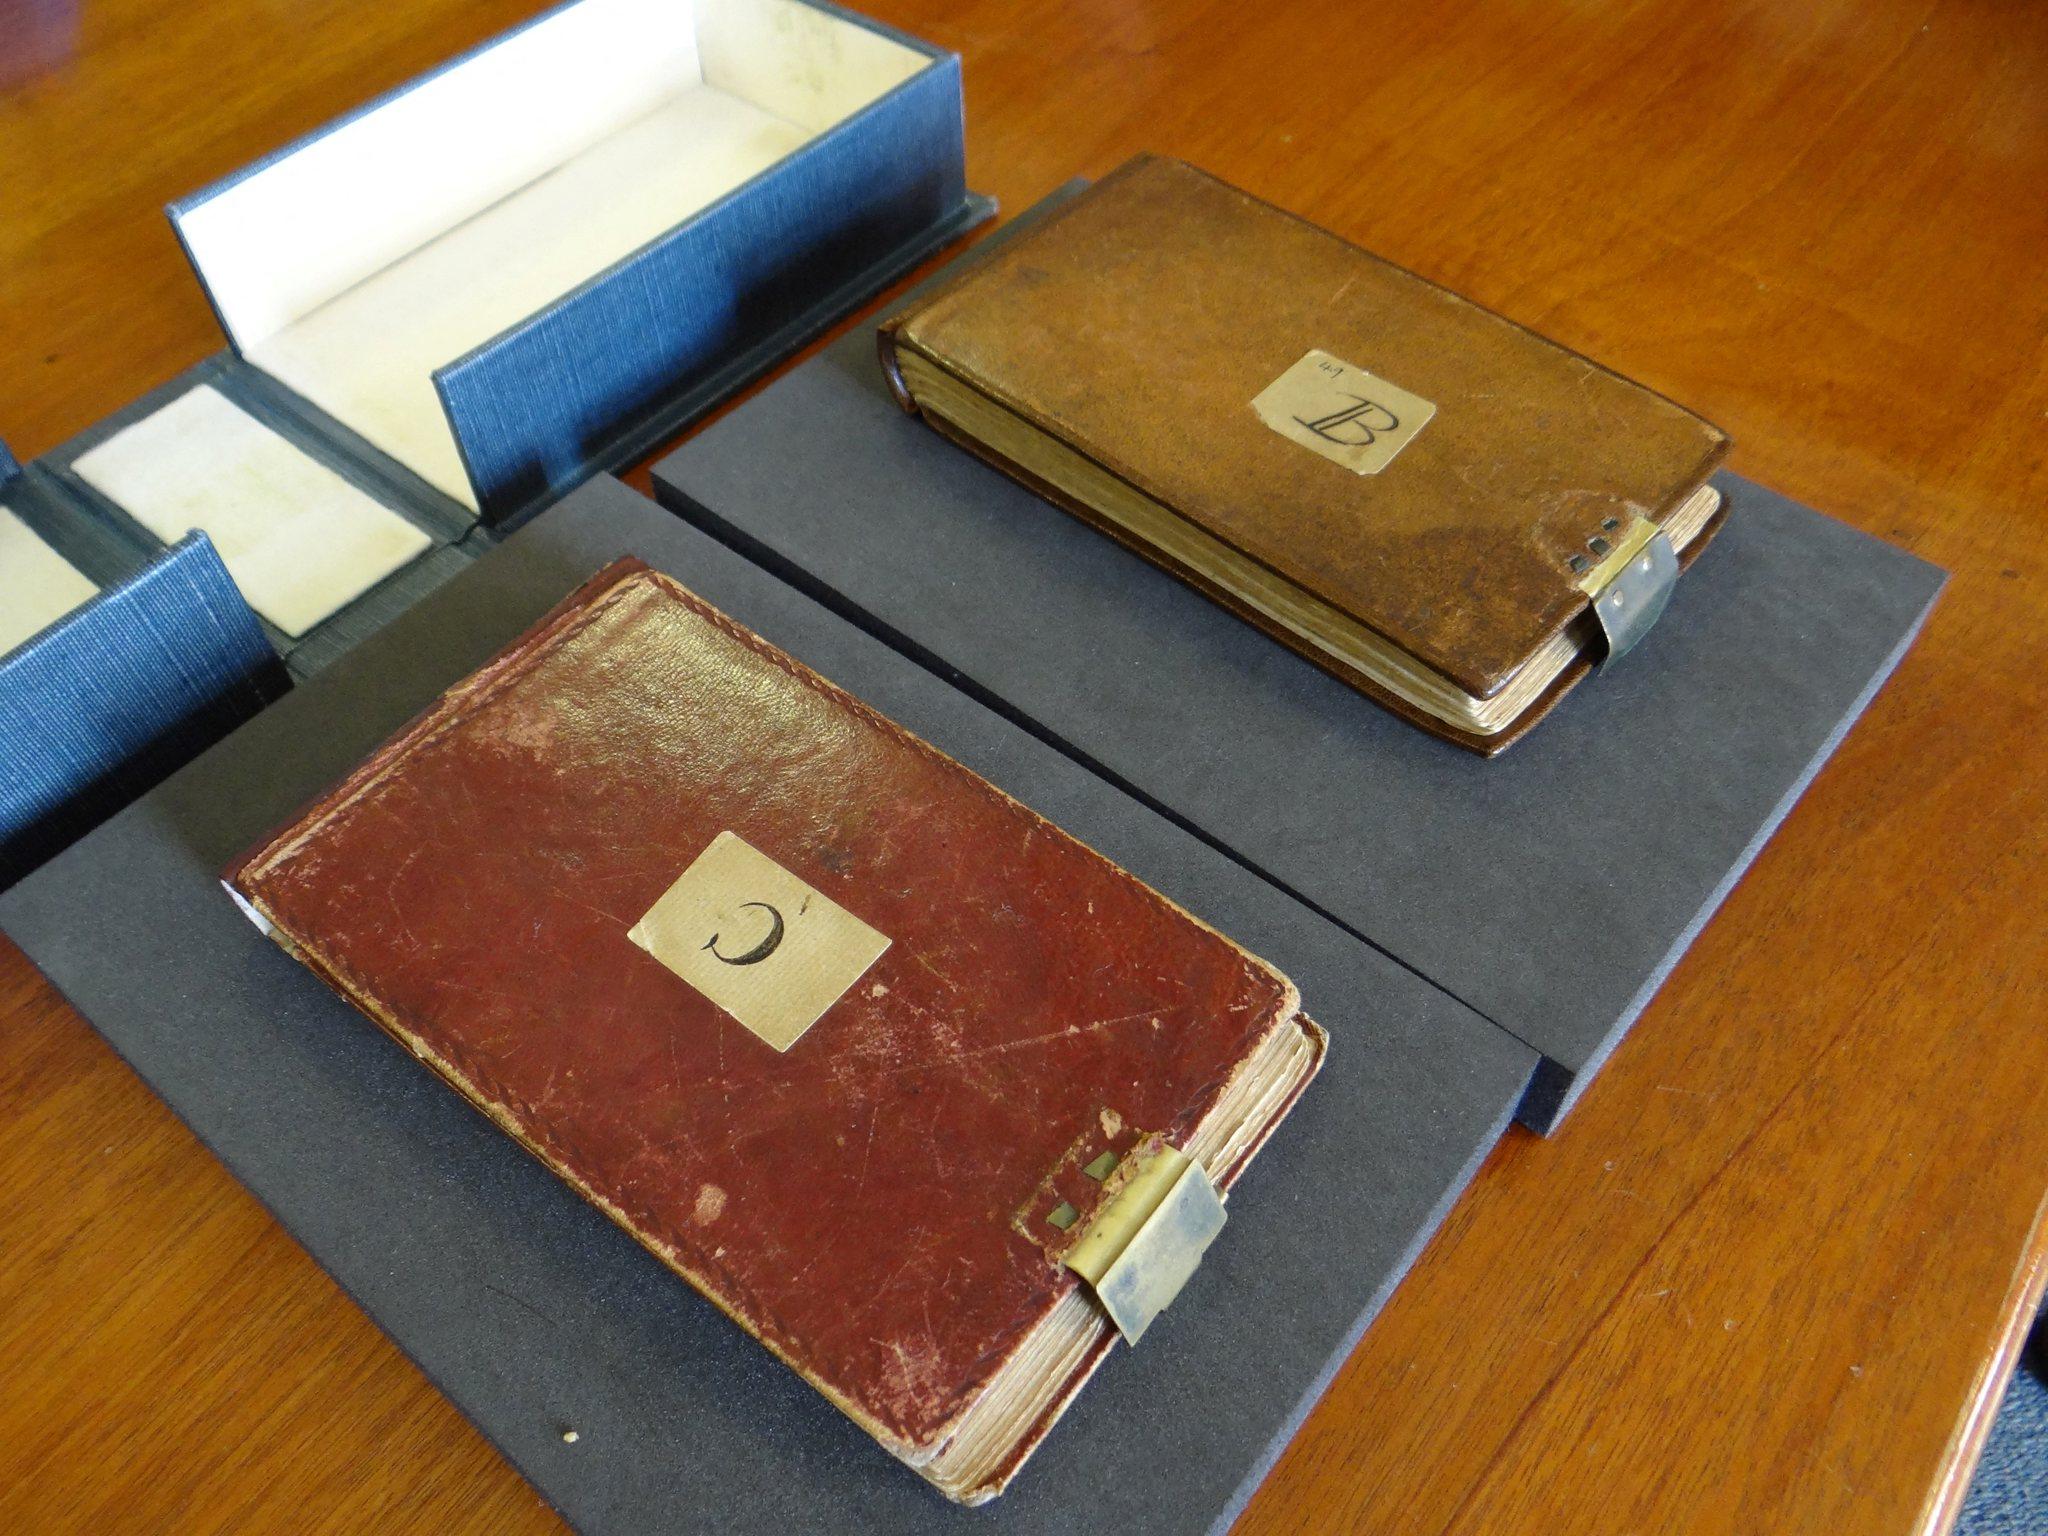 Imagem mostra os cadernos perdidos devolvidos do cientista britânico Charles Darwin